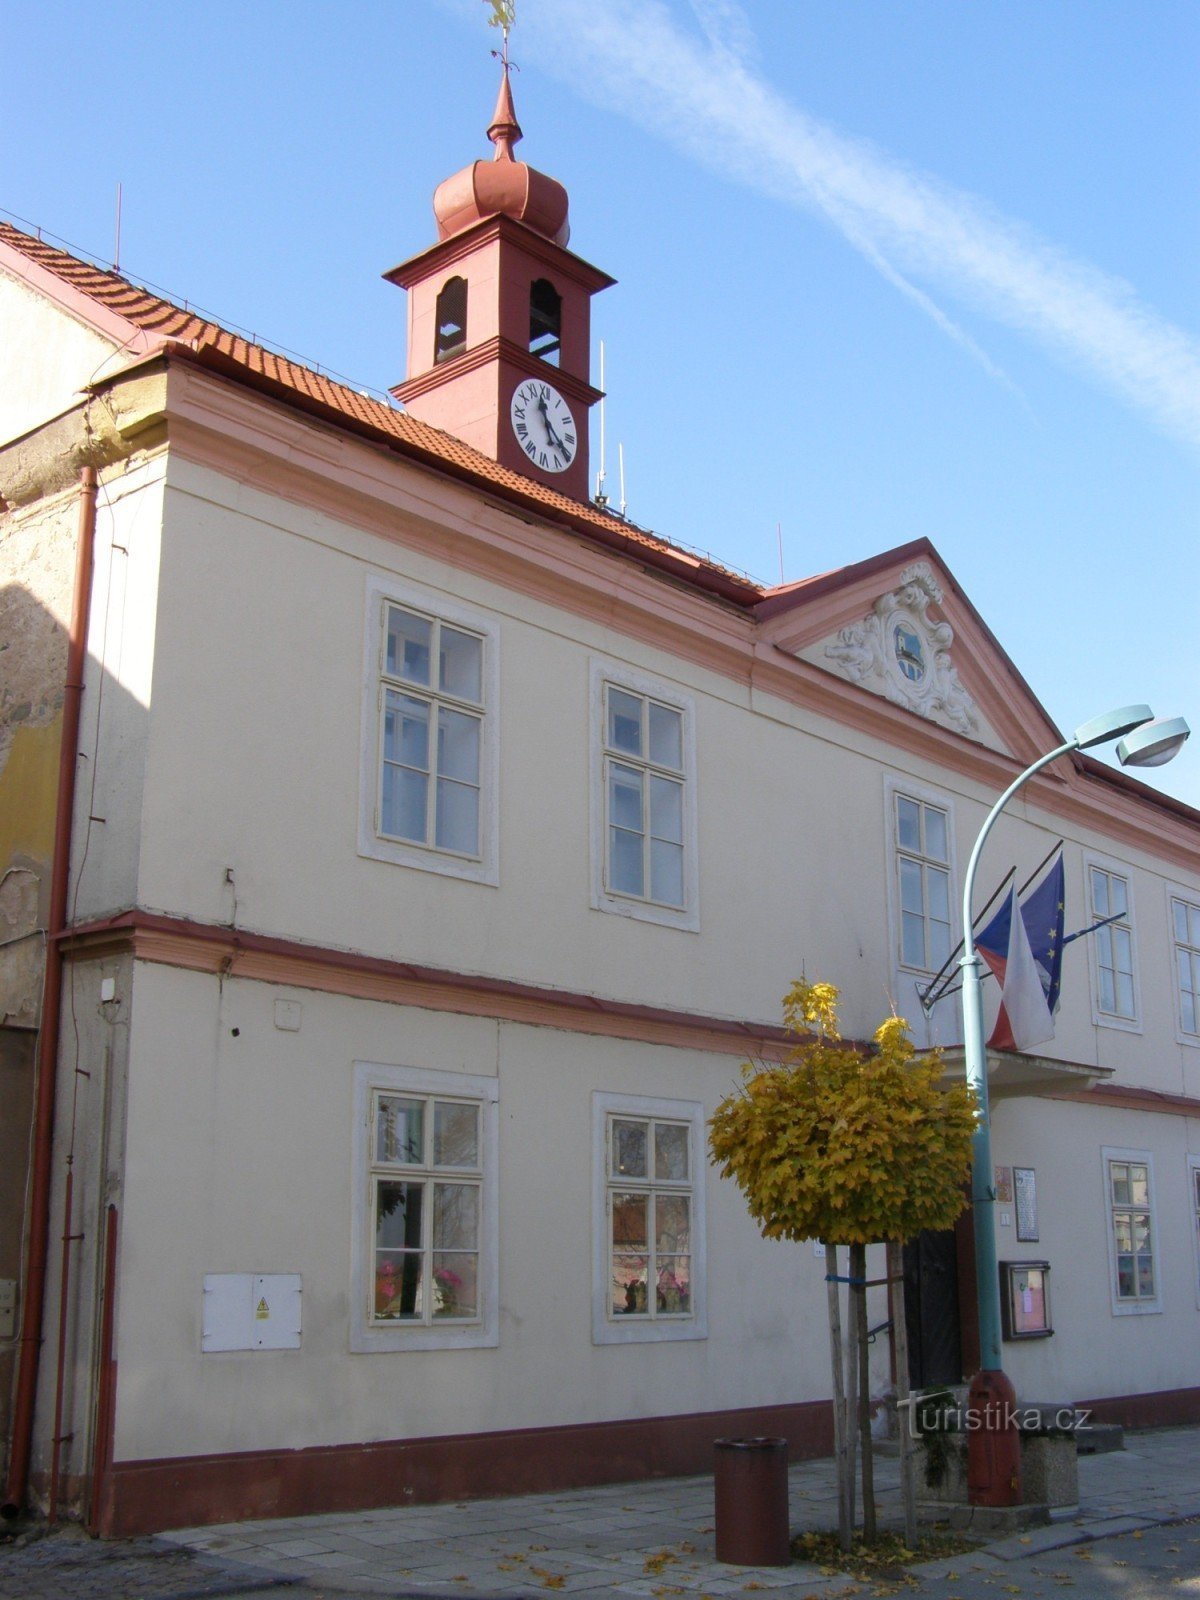 Týnec nad Labem - Tòa thị chính số 1